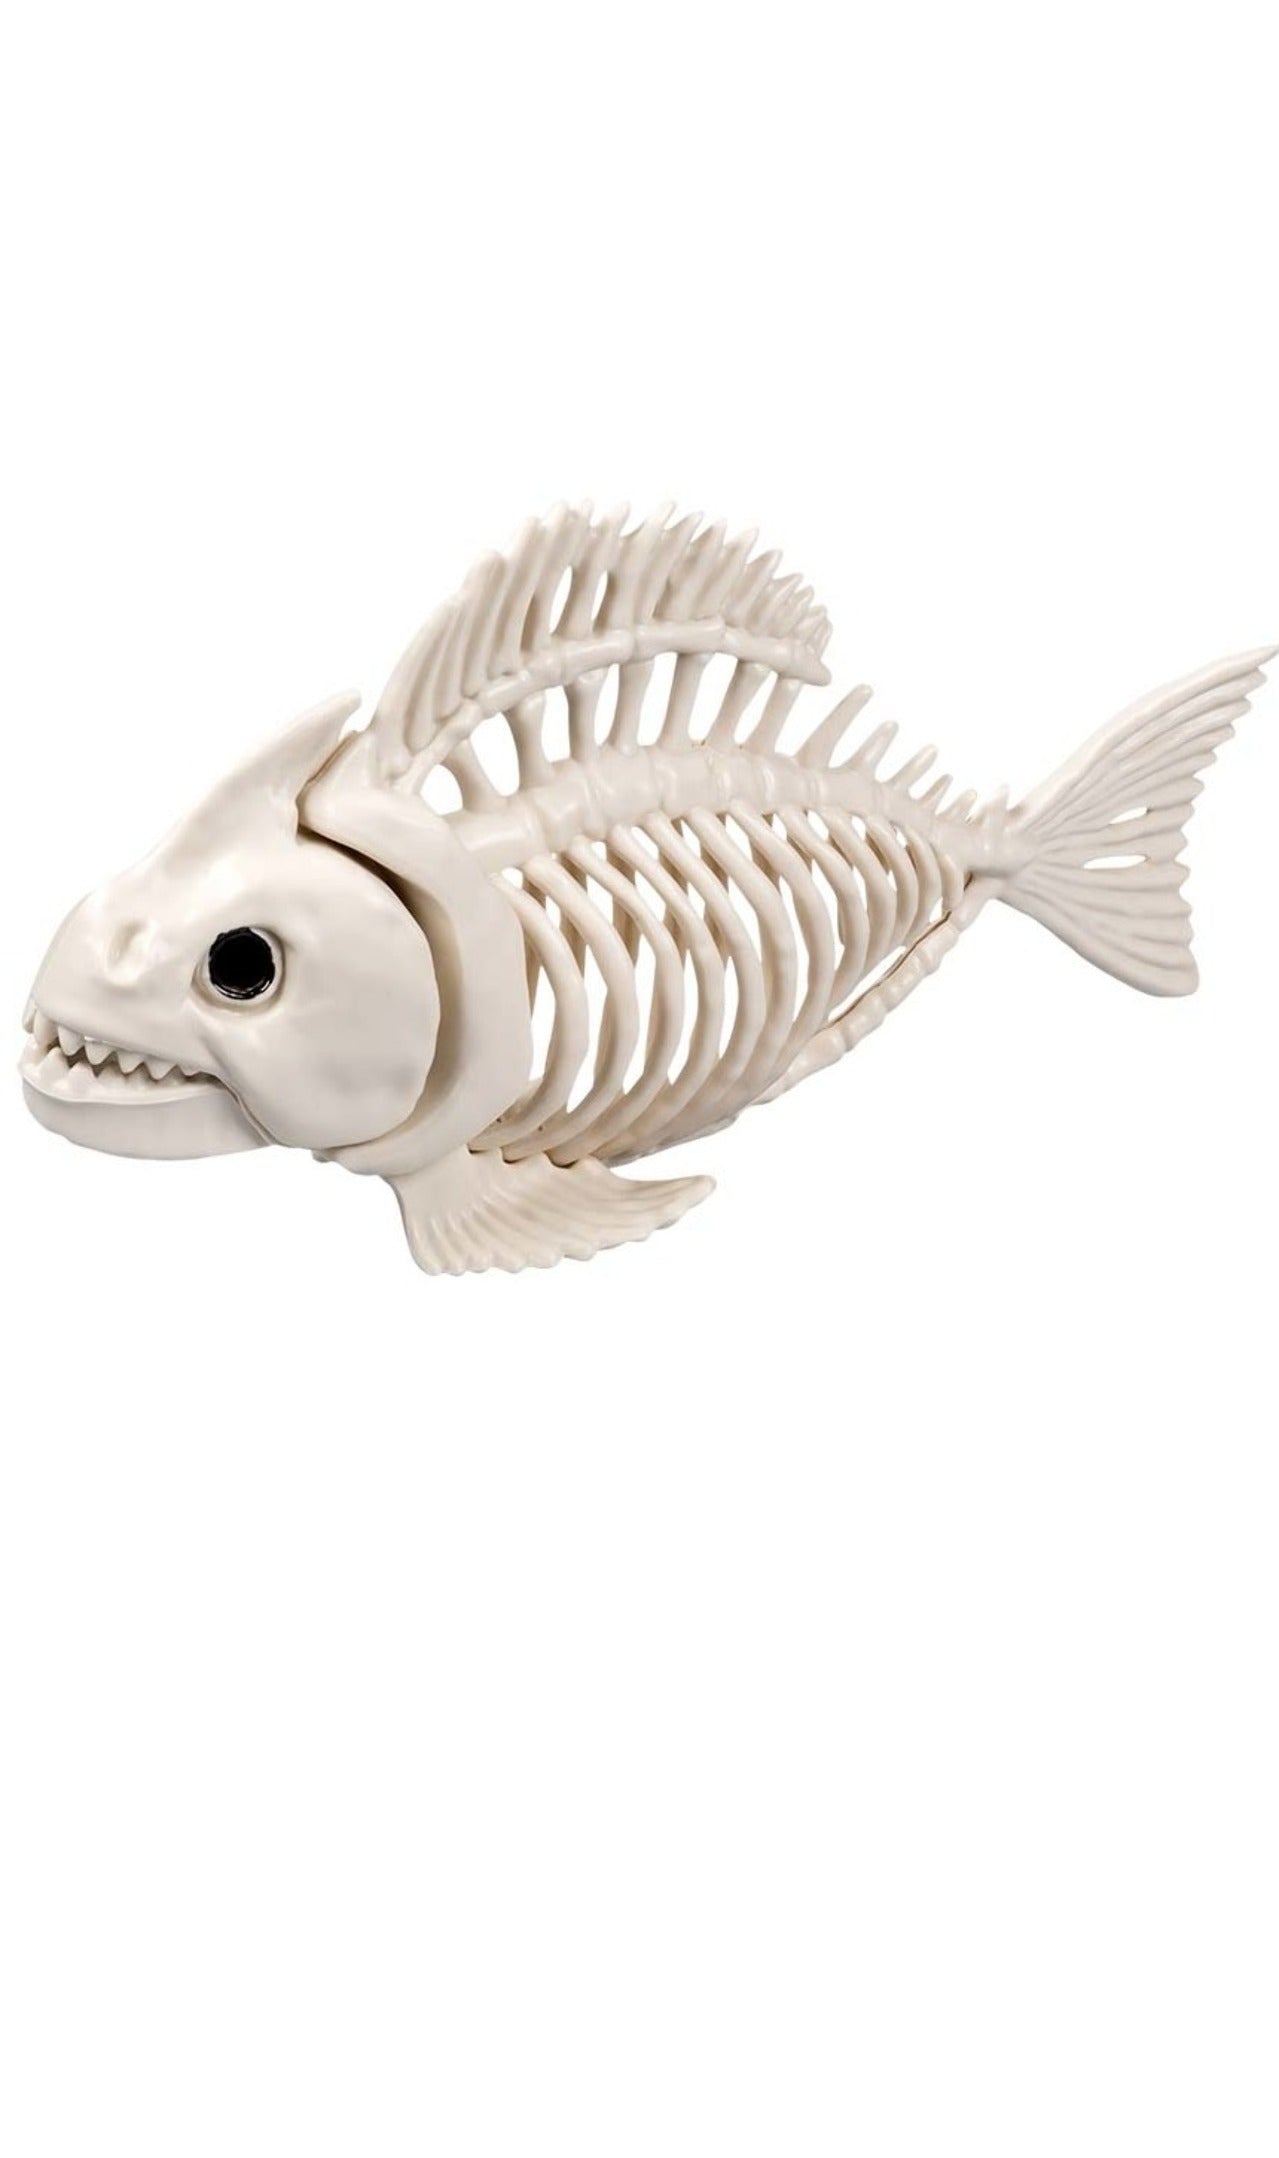 Piranha-Skelett